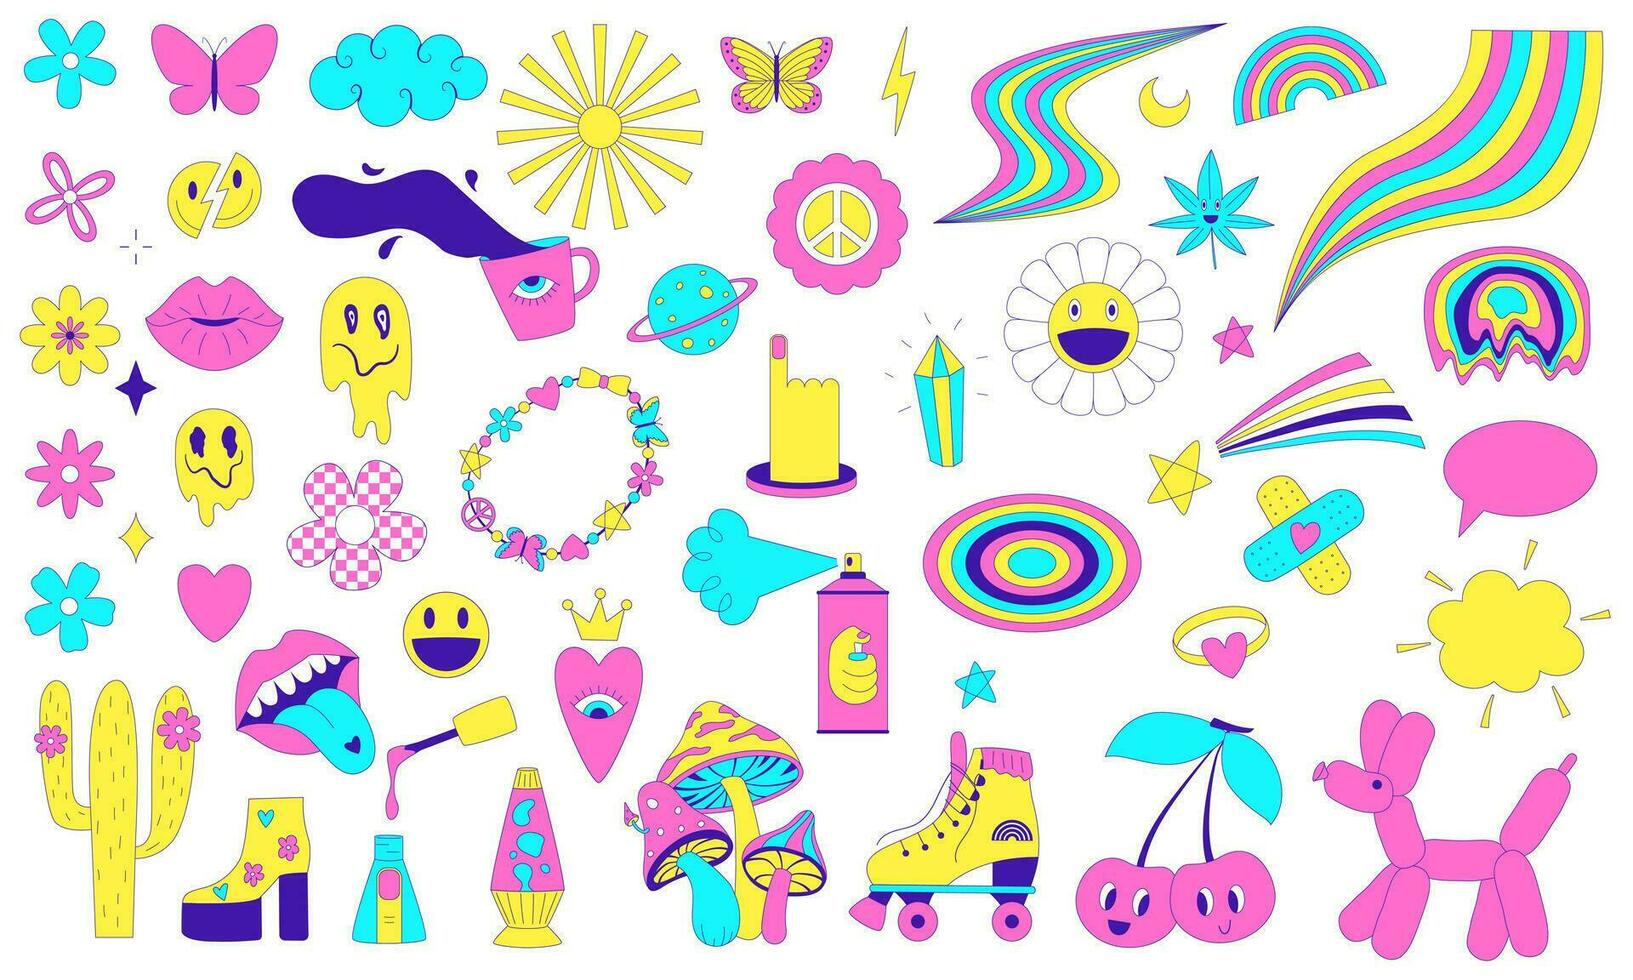 en uppsättning av y2k klistermärken med skraj trendig overkligt element, regnbåge, smiley ansikte, psychedelic svamp. en uppsättning av komisk syra klistermärken från 2000-talet. konstig vektor illustration isolerat på vit.